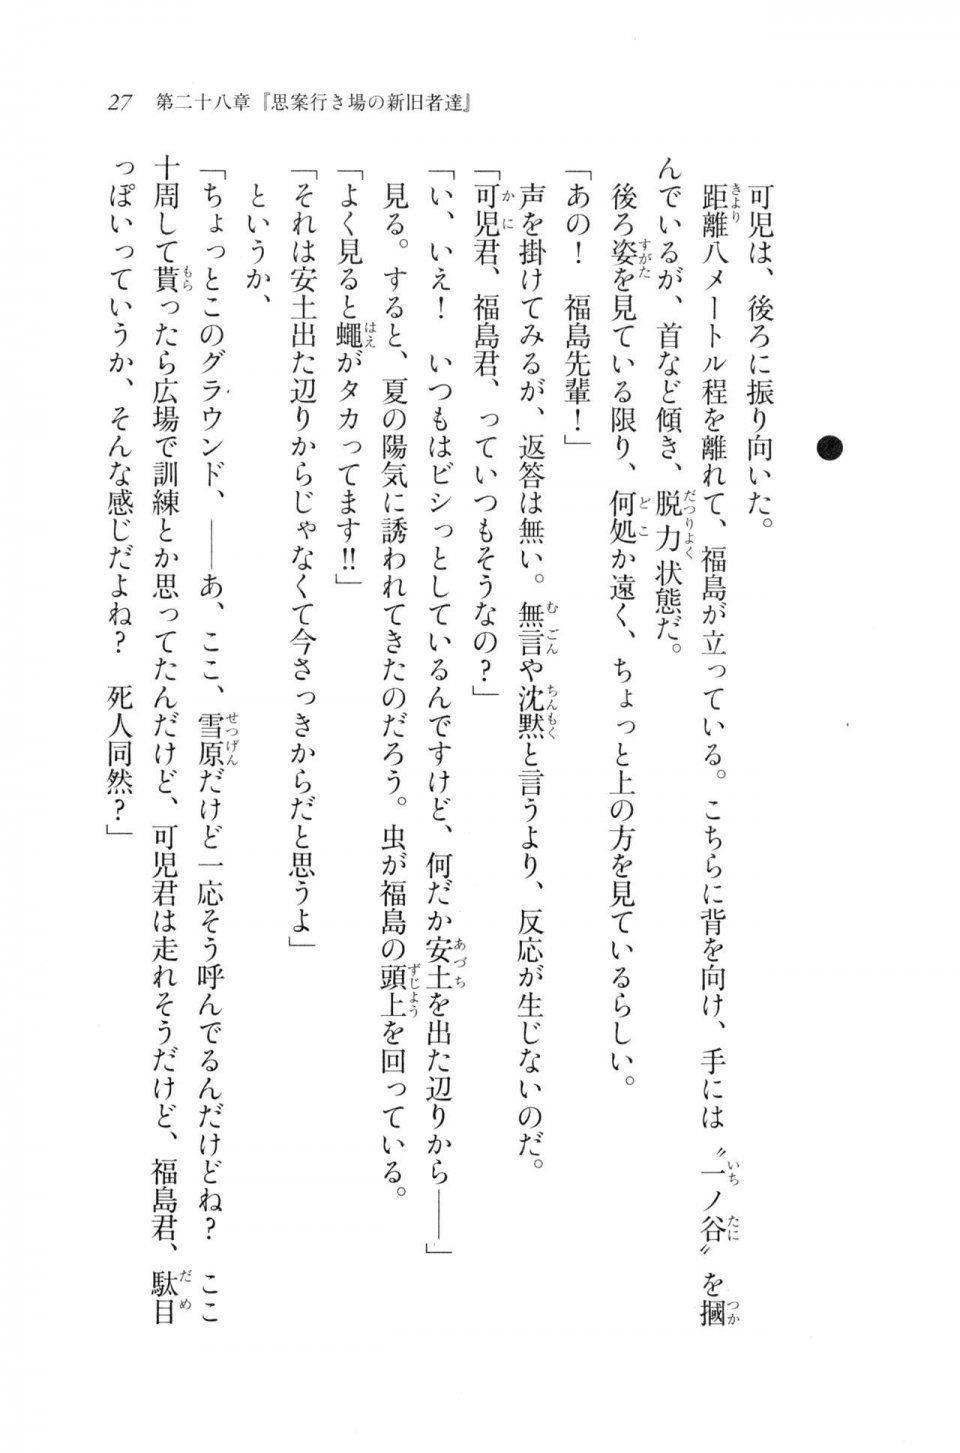 Kyoukai Senjou no Horizon LN Vol 20(8B) - Photo #27